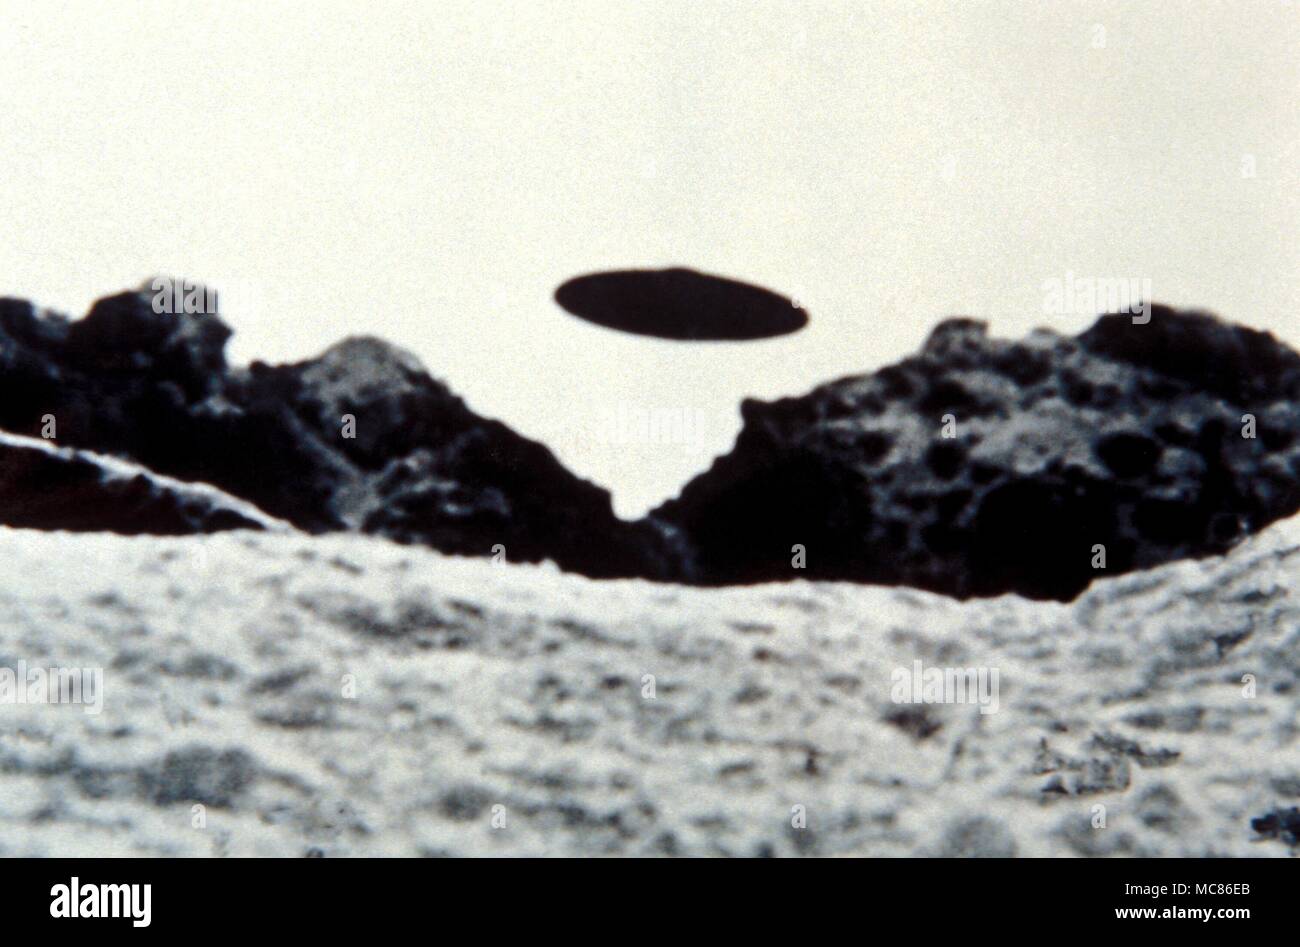 Objeto Volador No Identificado - ovni fotografiado en el Bernina Glaciar, Italia, el 31 de julio de 1952 por Gampiere Monguzzi. Wendelle Stevens archives, con arreglo con Charles Walker Foto de stock